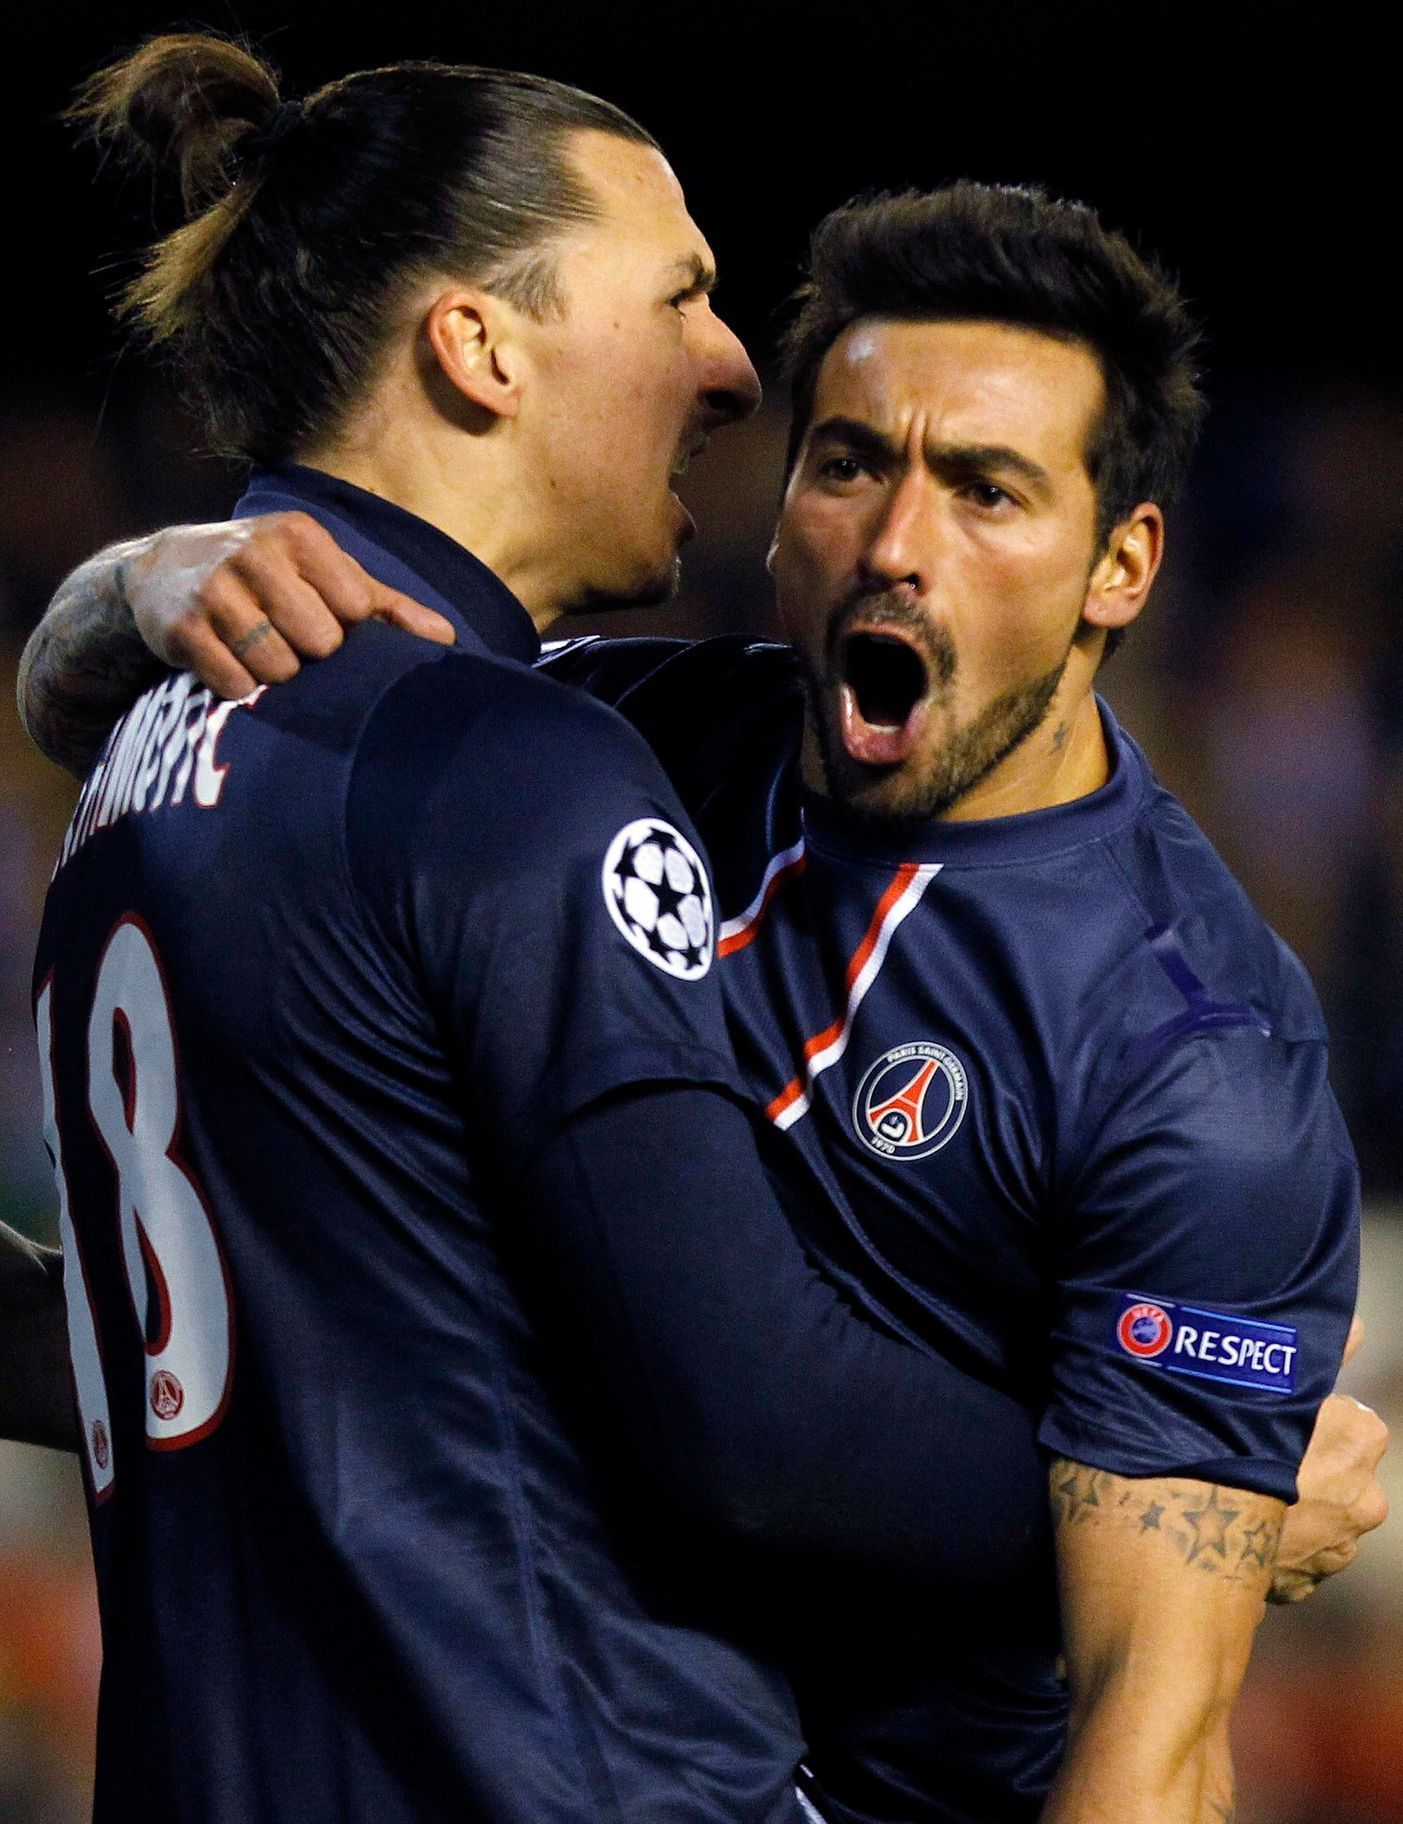 Liga mistrů, Valencie - Paris St. Germain: Zlatan Ibrahimovič  a Ezequiel Lavezzi (PSG)